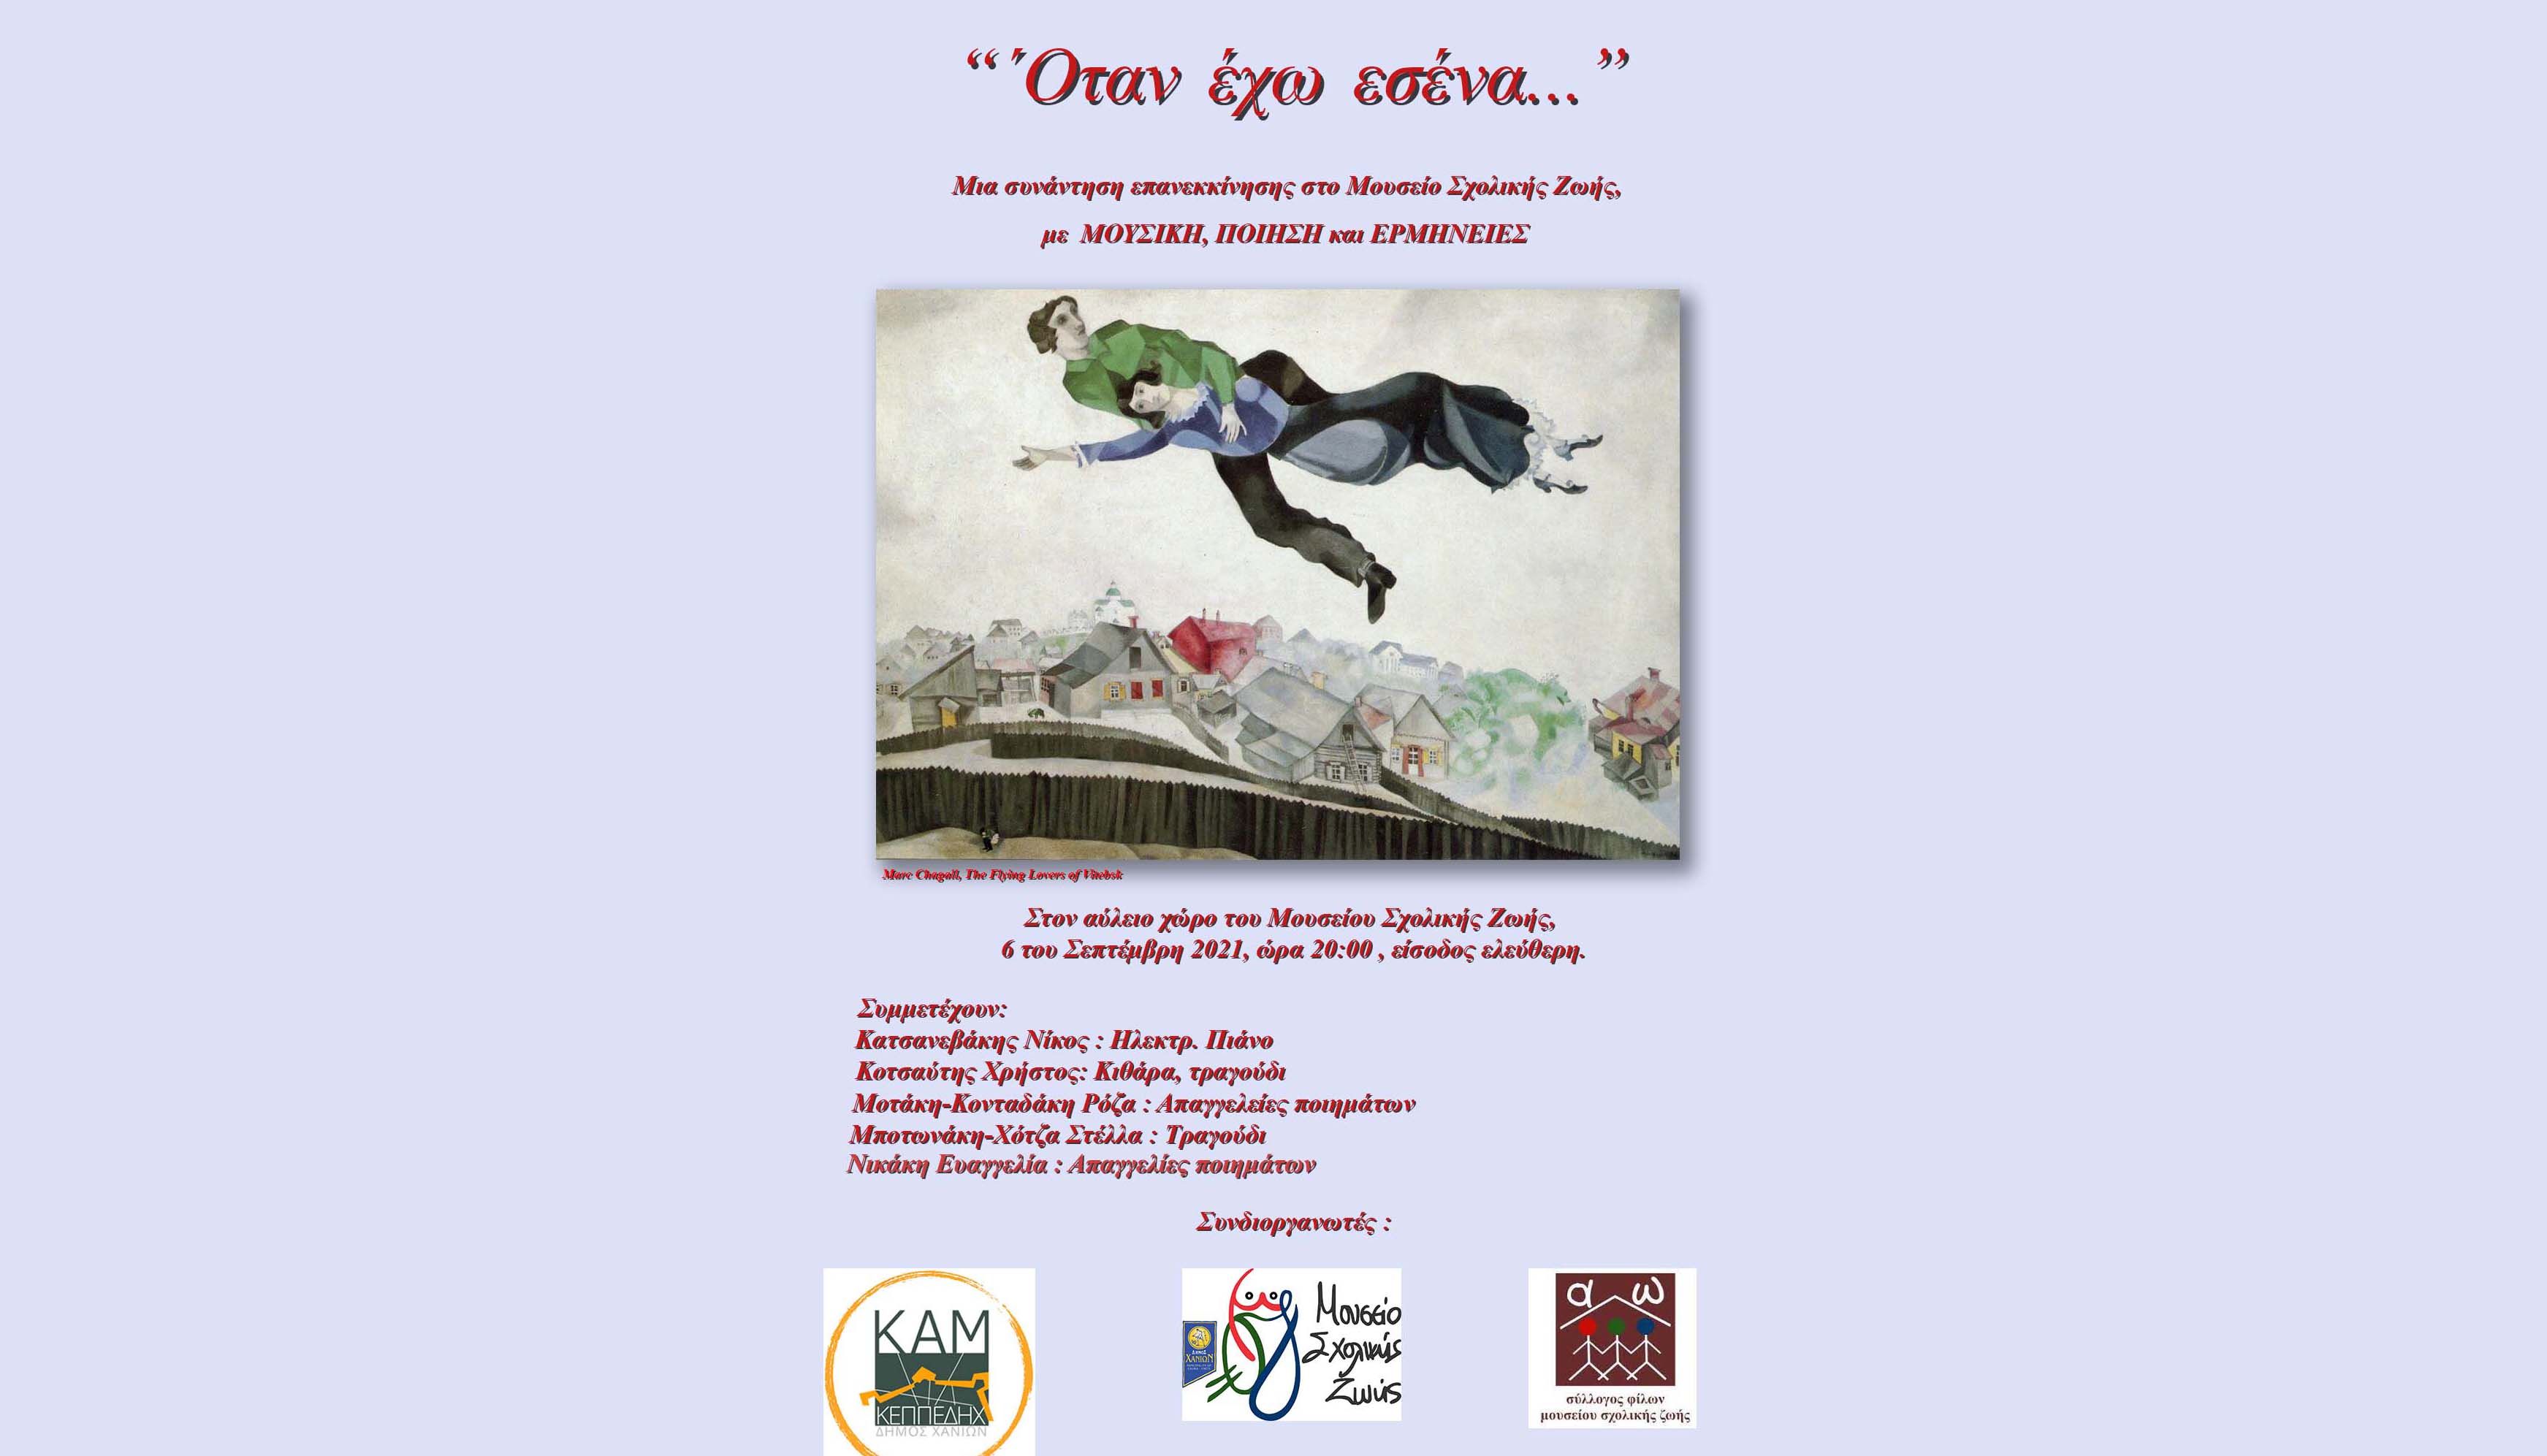 «Όταν έχω εσένα»: Μουσική Εκδήλωση στο Μουσείο Σχολικής Ζωης του Δήμου Χανίων